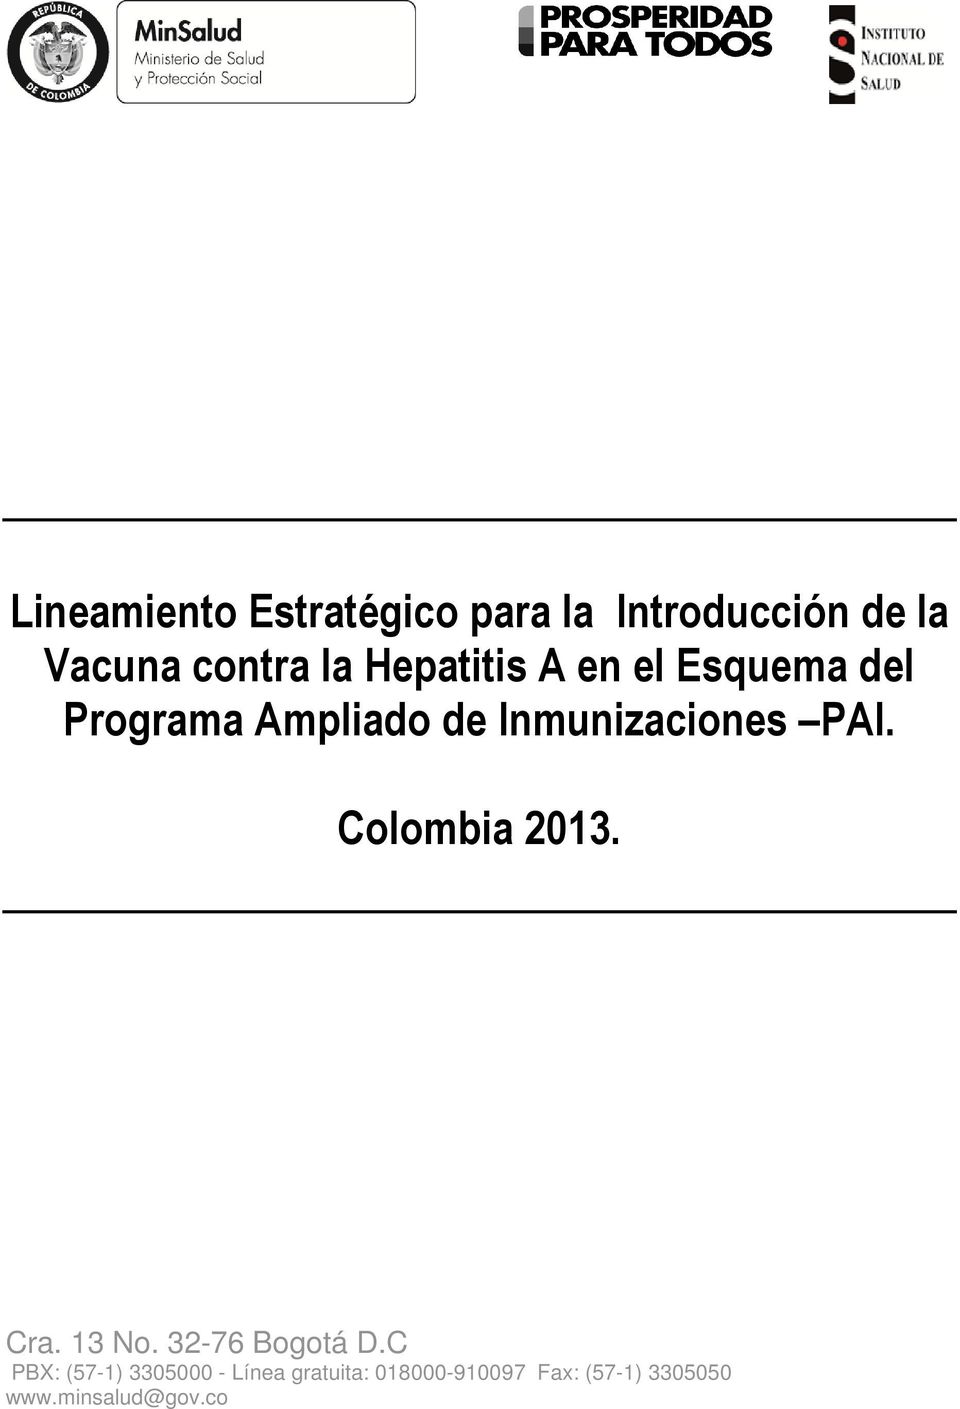 Hepatitis A en el Esquema del Programa